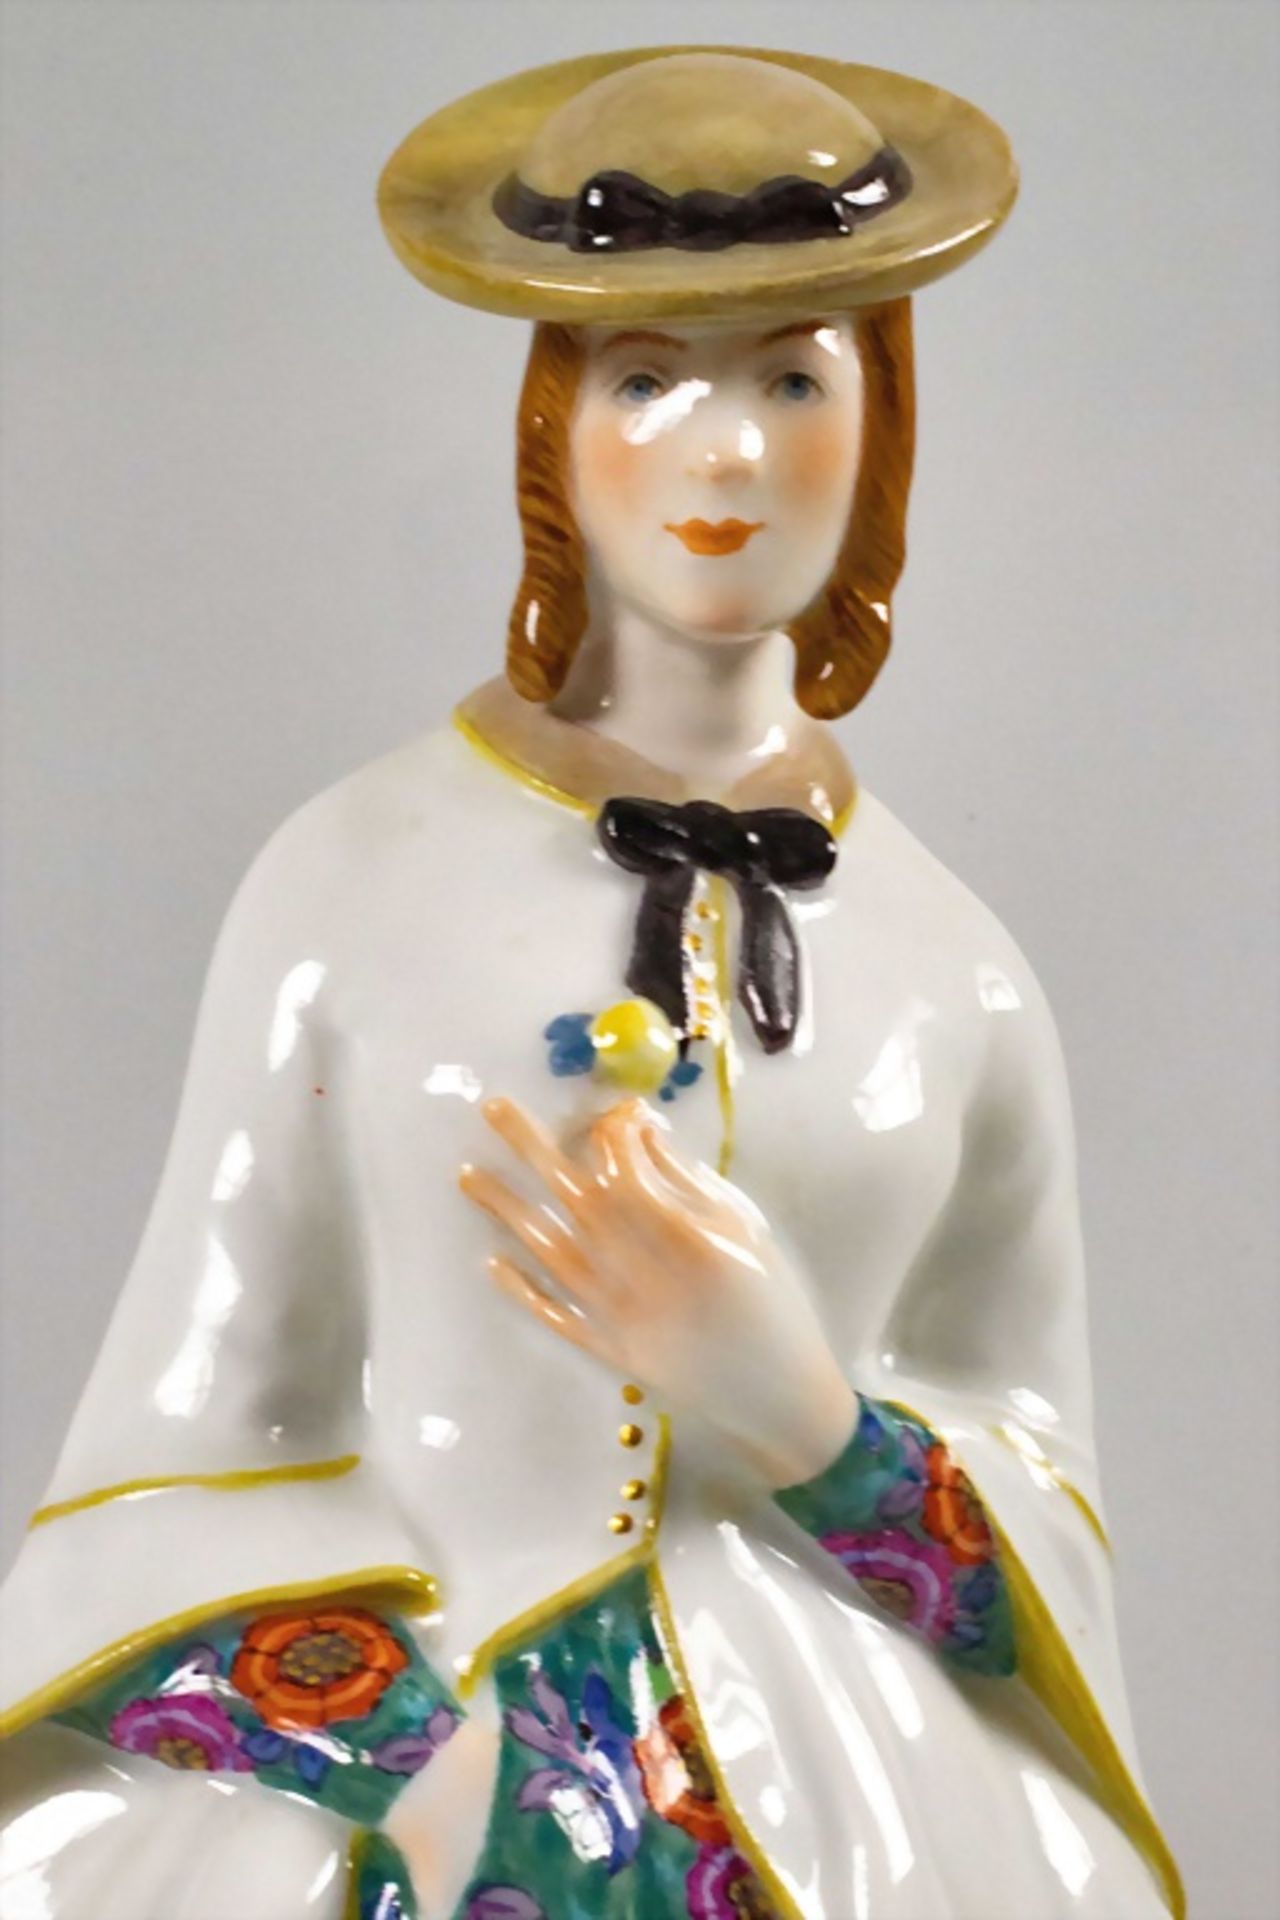 Jugendstil Figur 'Mädchen mit Rose' / An Art Nouveau figurine 'Girl with a rose'', Richard ... - Image 9 of 10